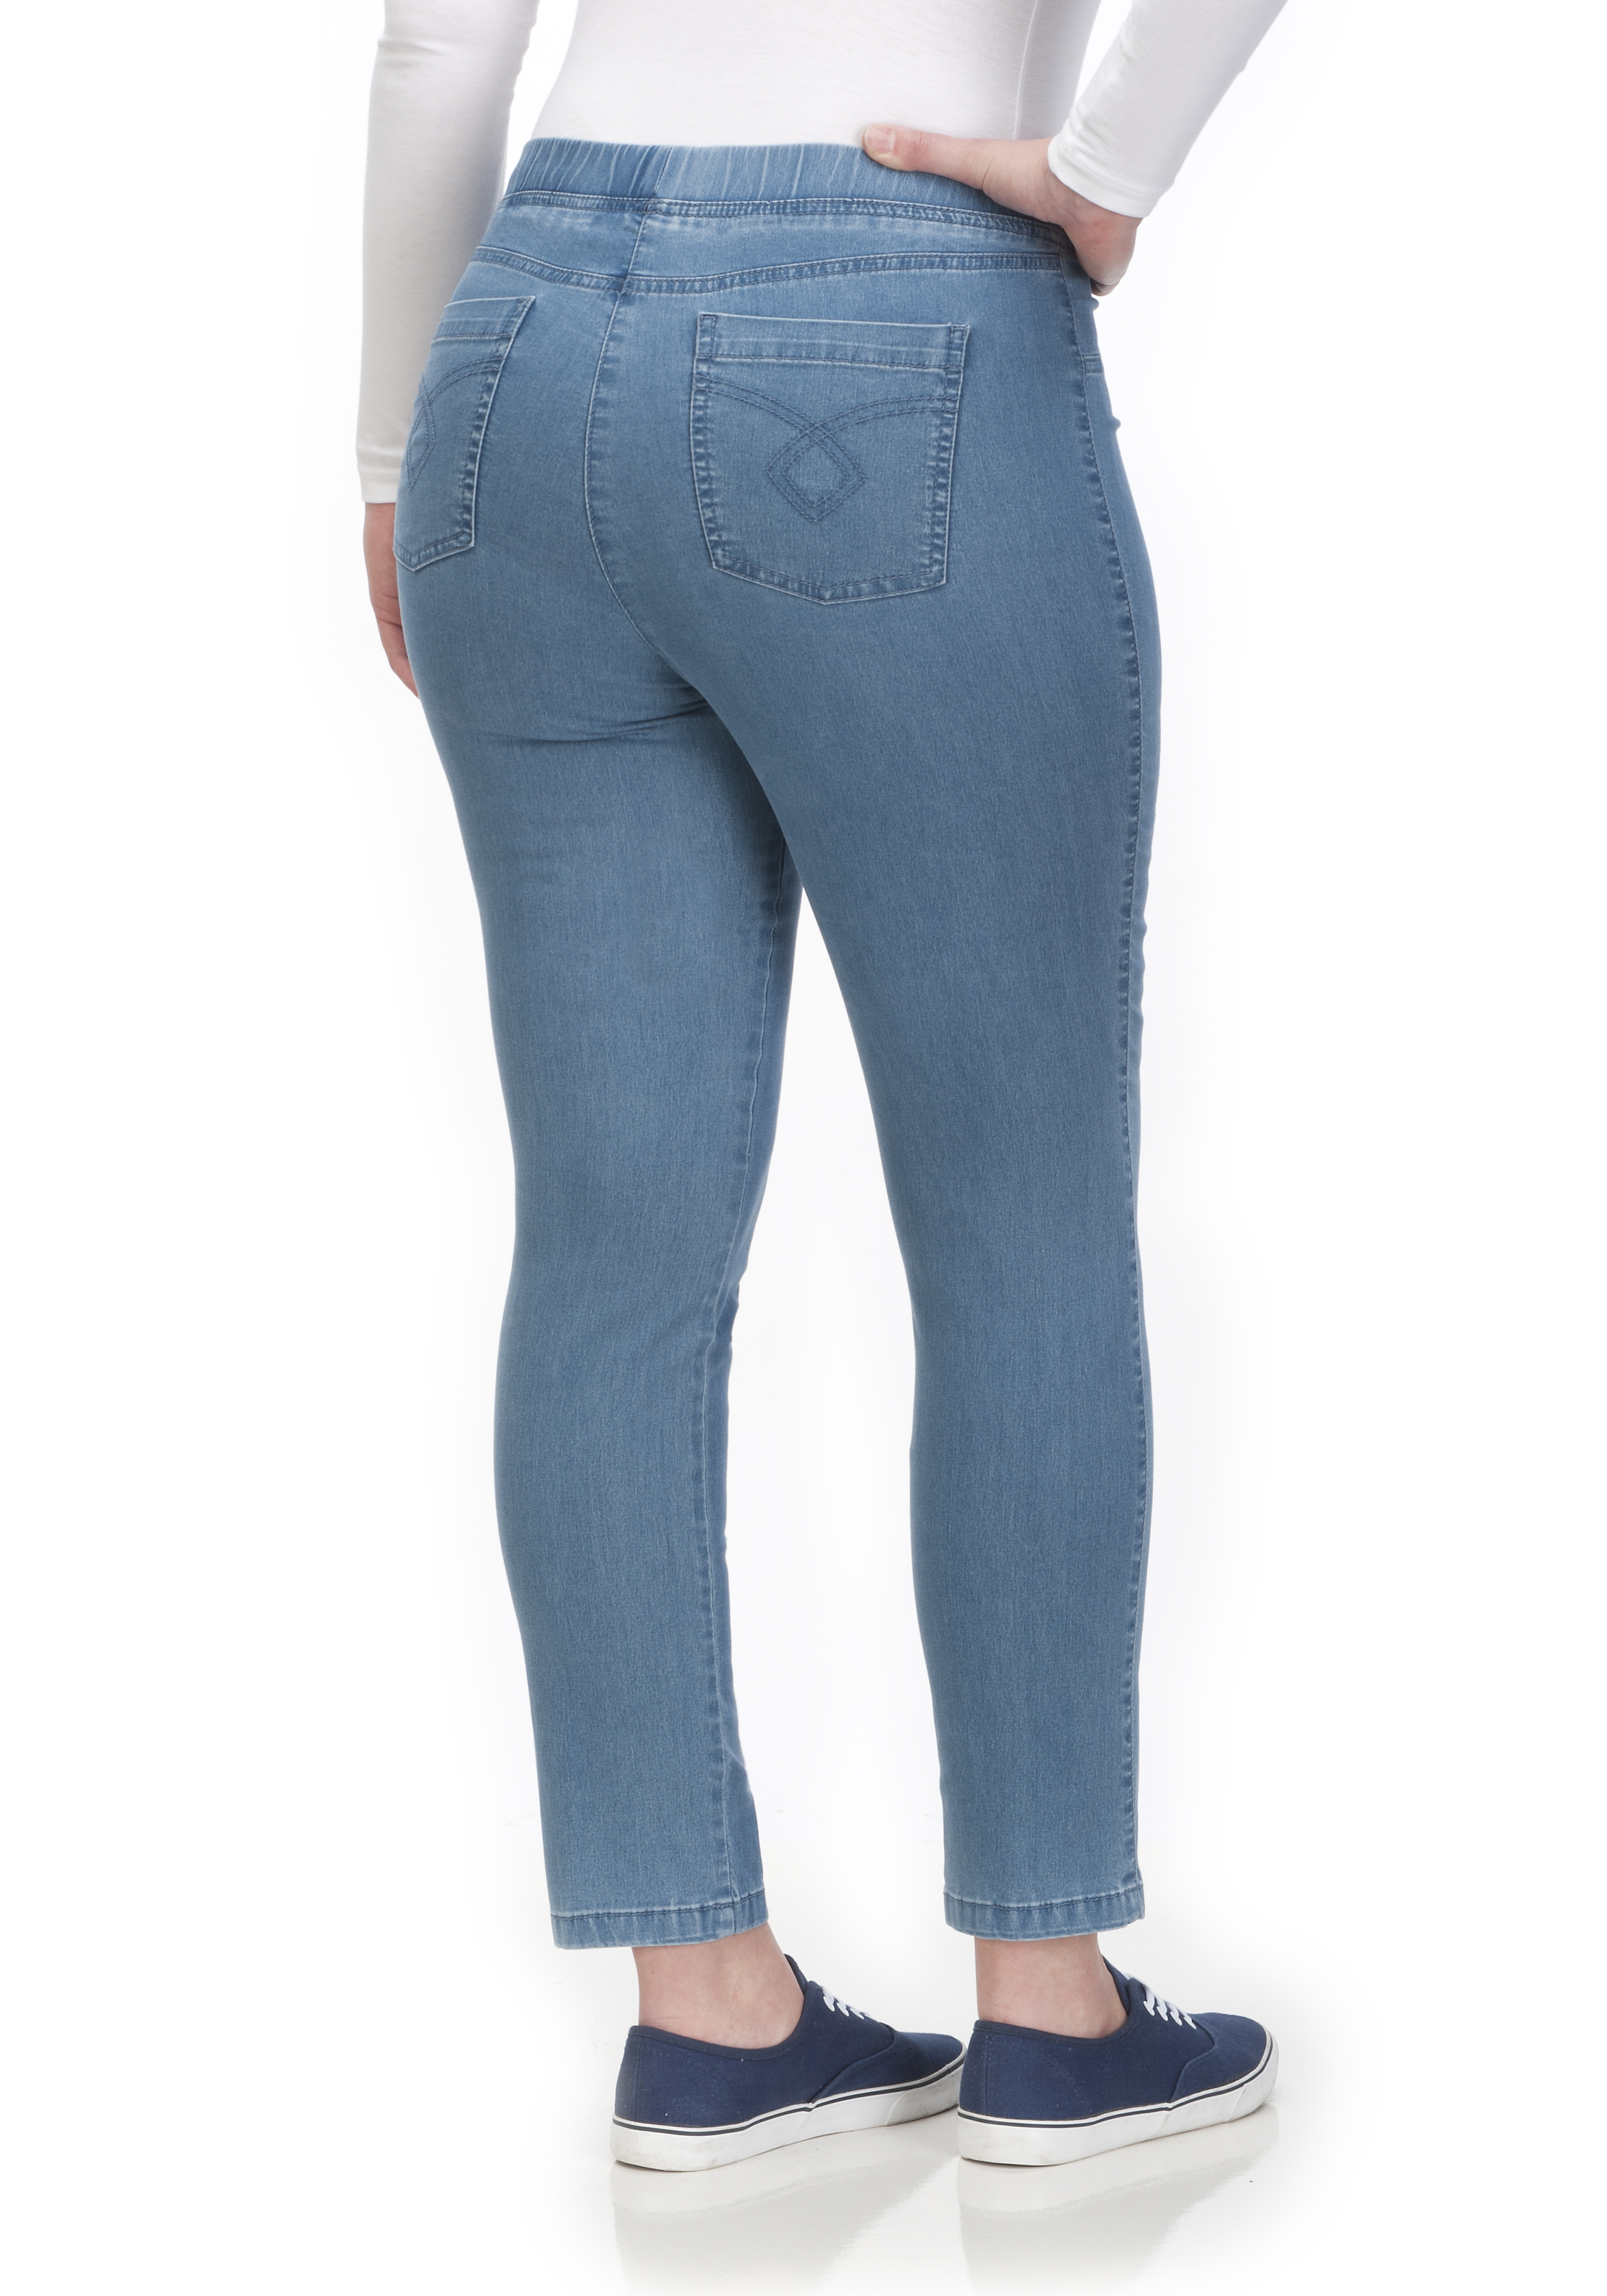 KjBRAND Jeggings JENNY Superstretch Jeans - Curvy by BiNA